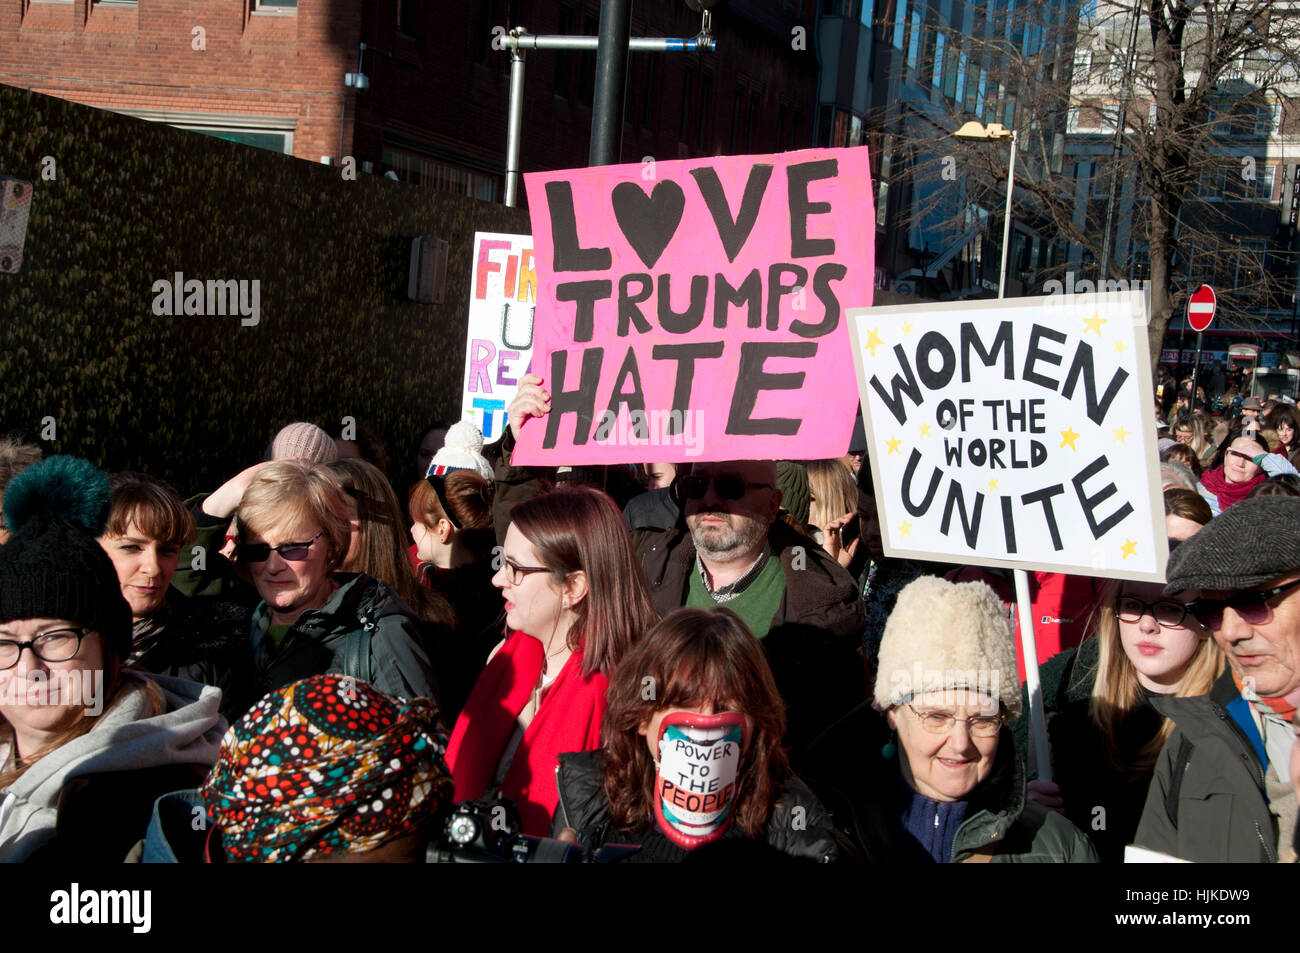 Anti-femmes, Londres. mars Trump Des pancartes disant "l'amour l'emporte sur la haine" et "Les femmes de tous les pays, unissez-vous'. Banque D'Images